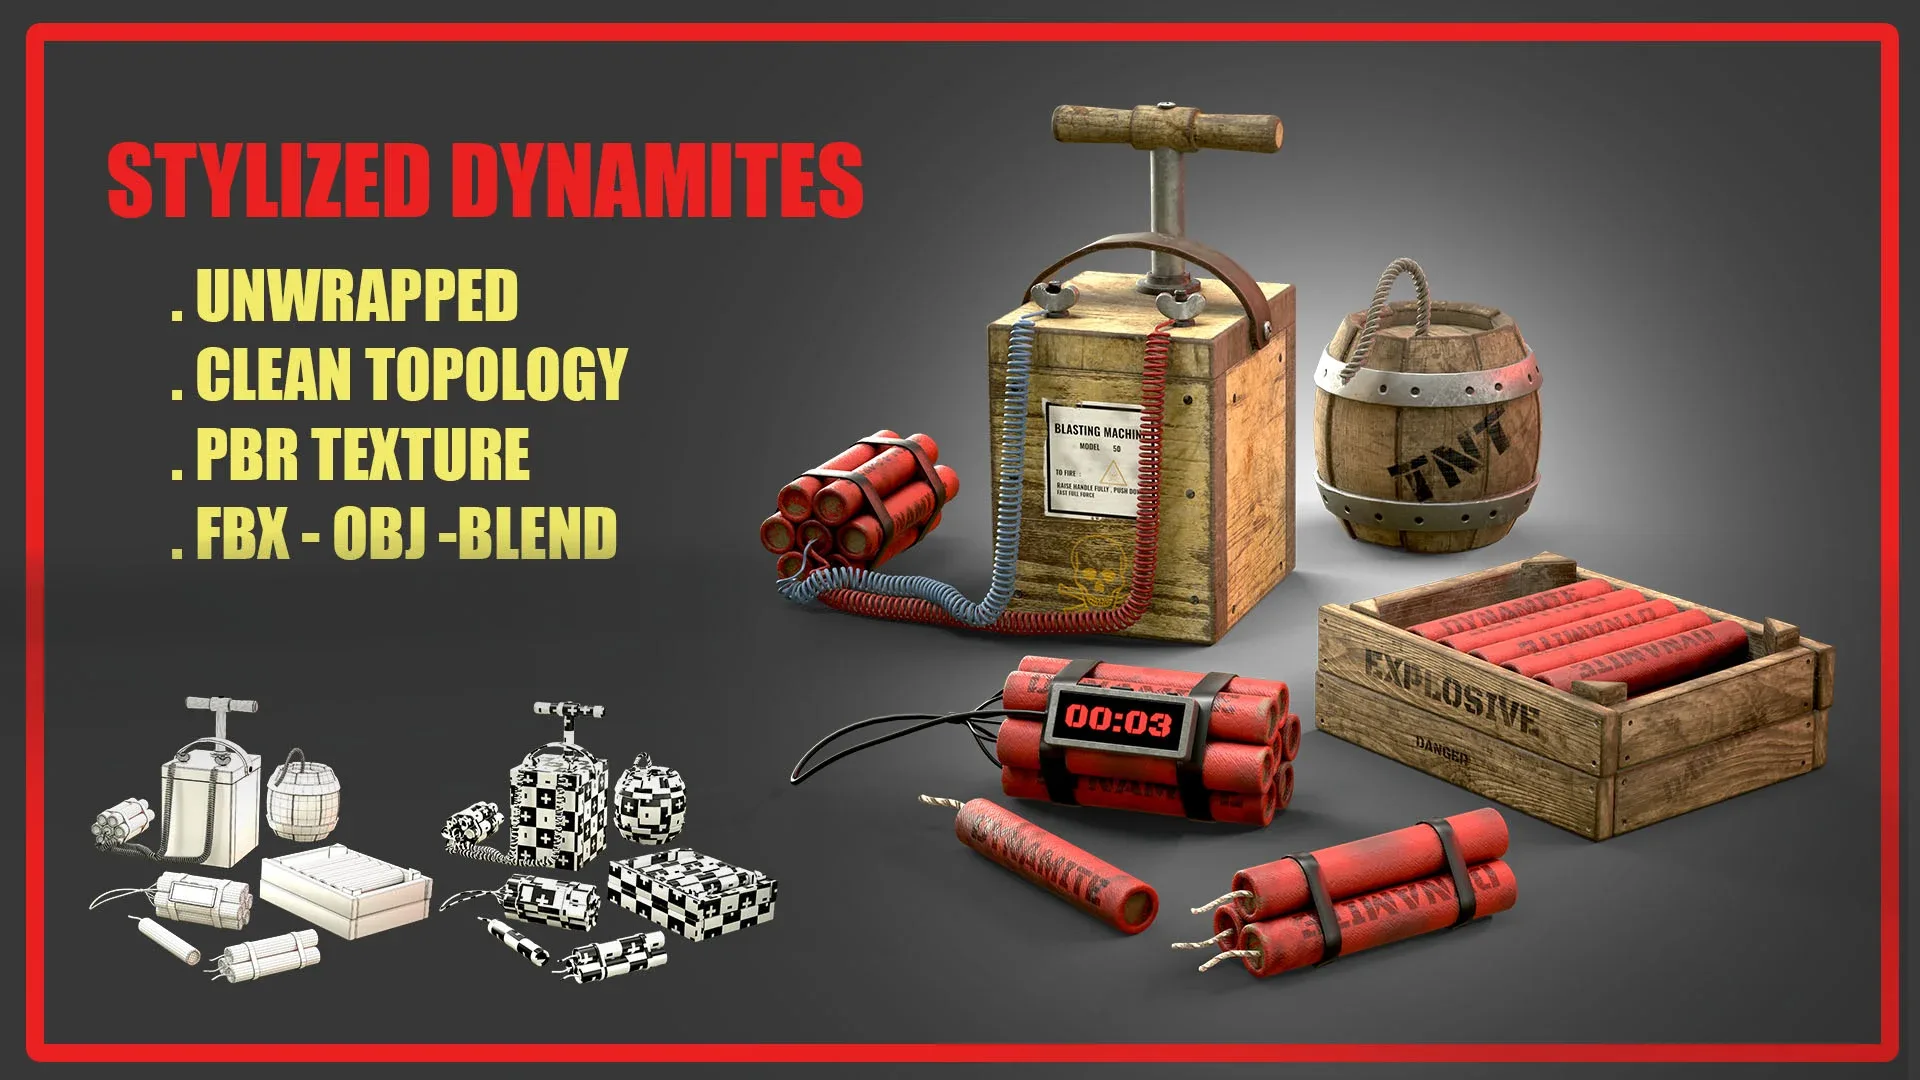 Stylized Dynamites